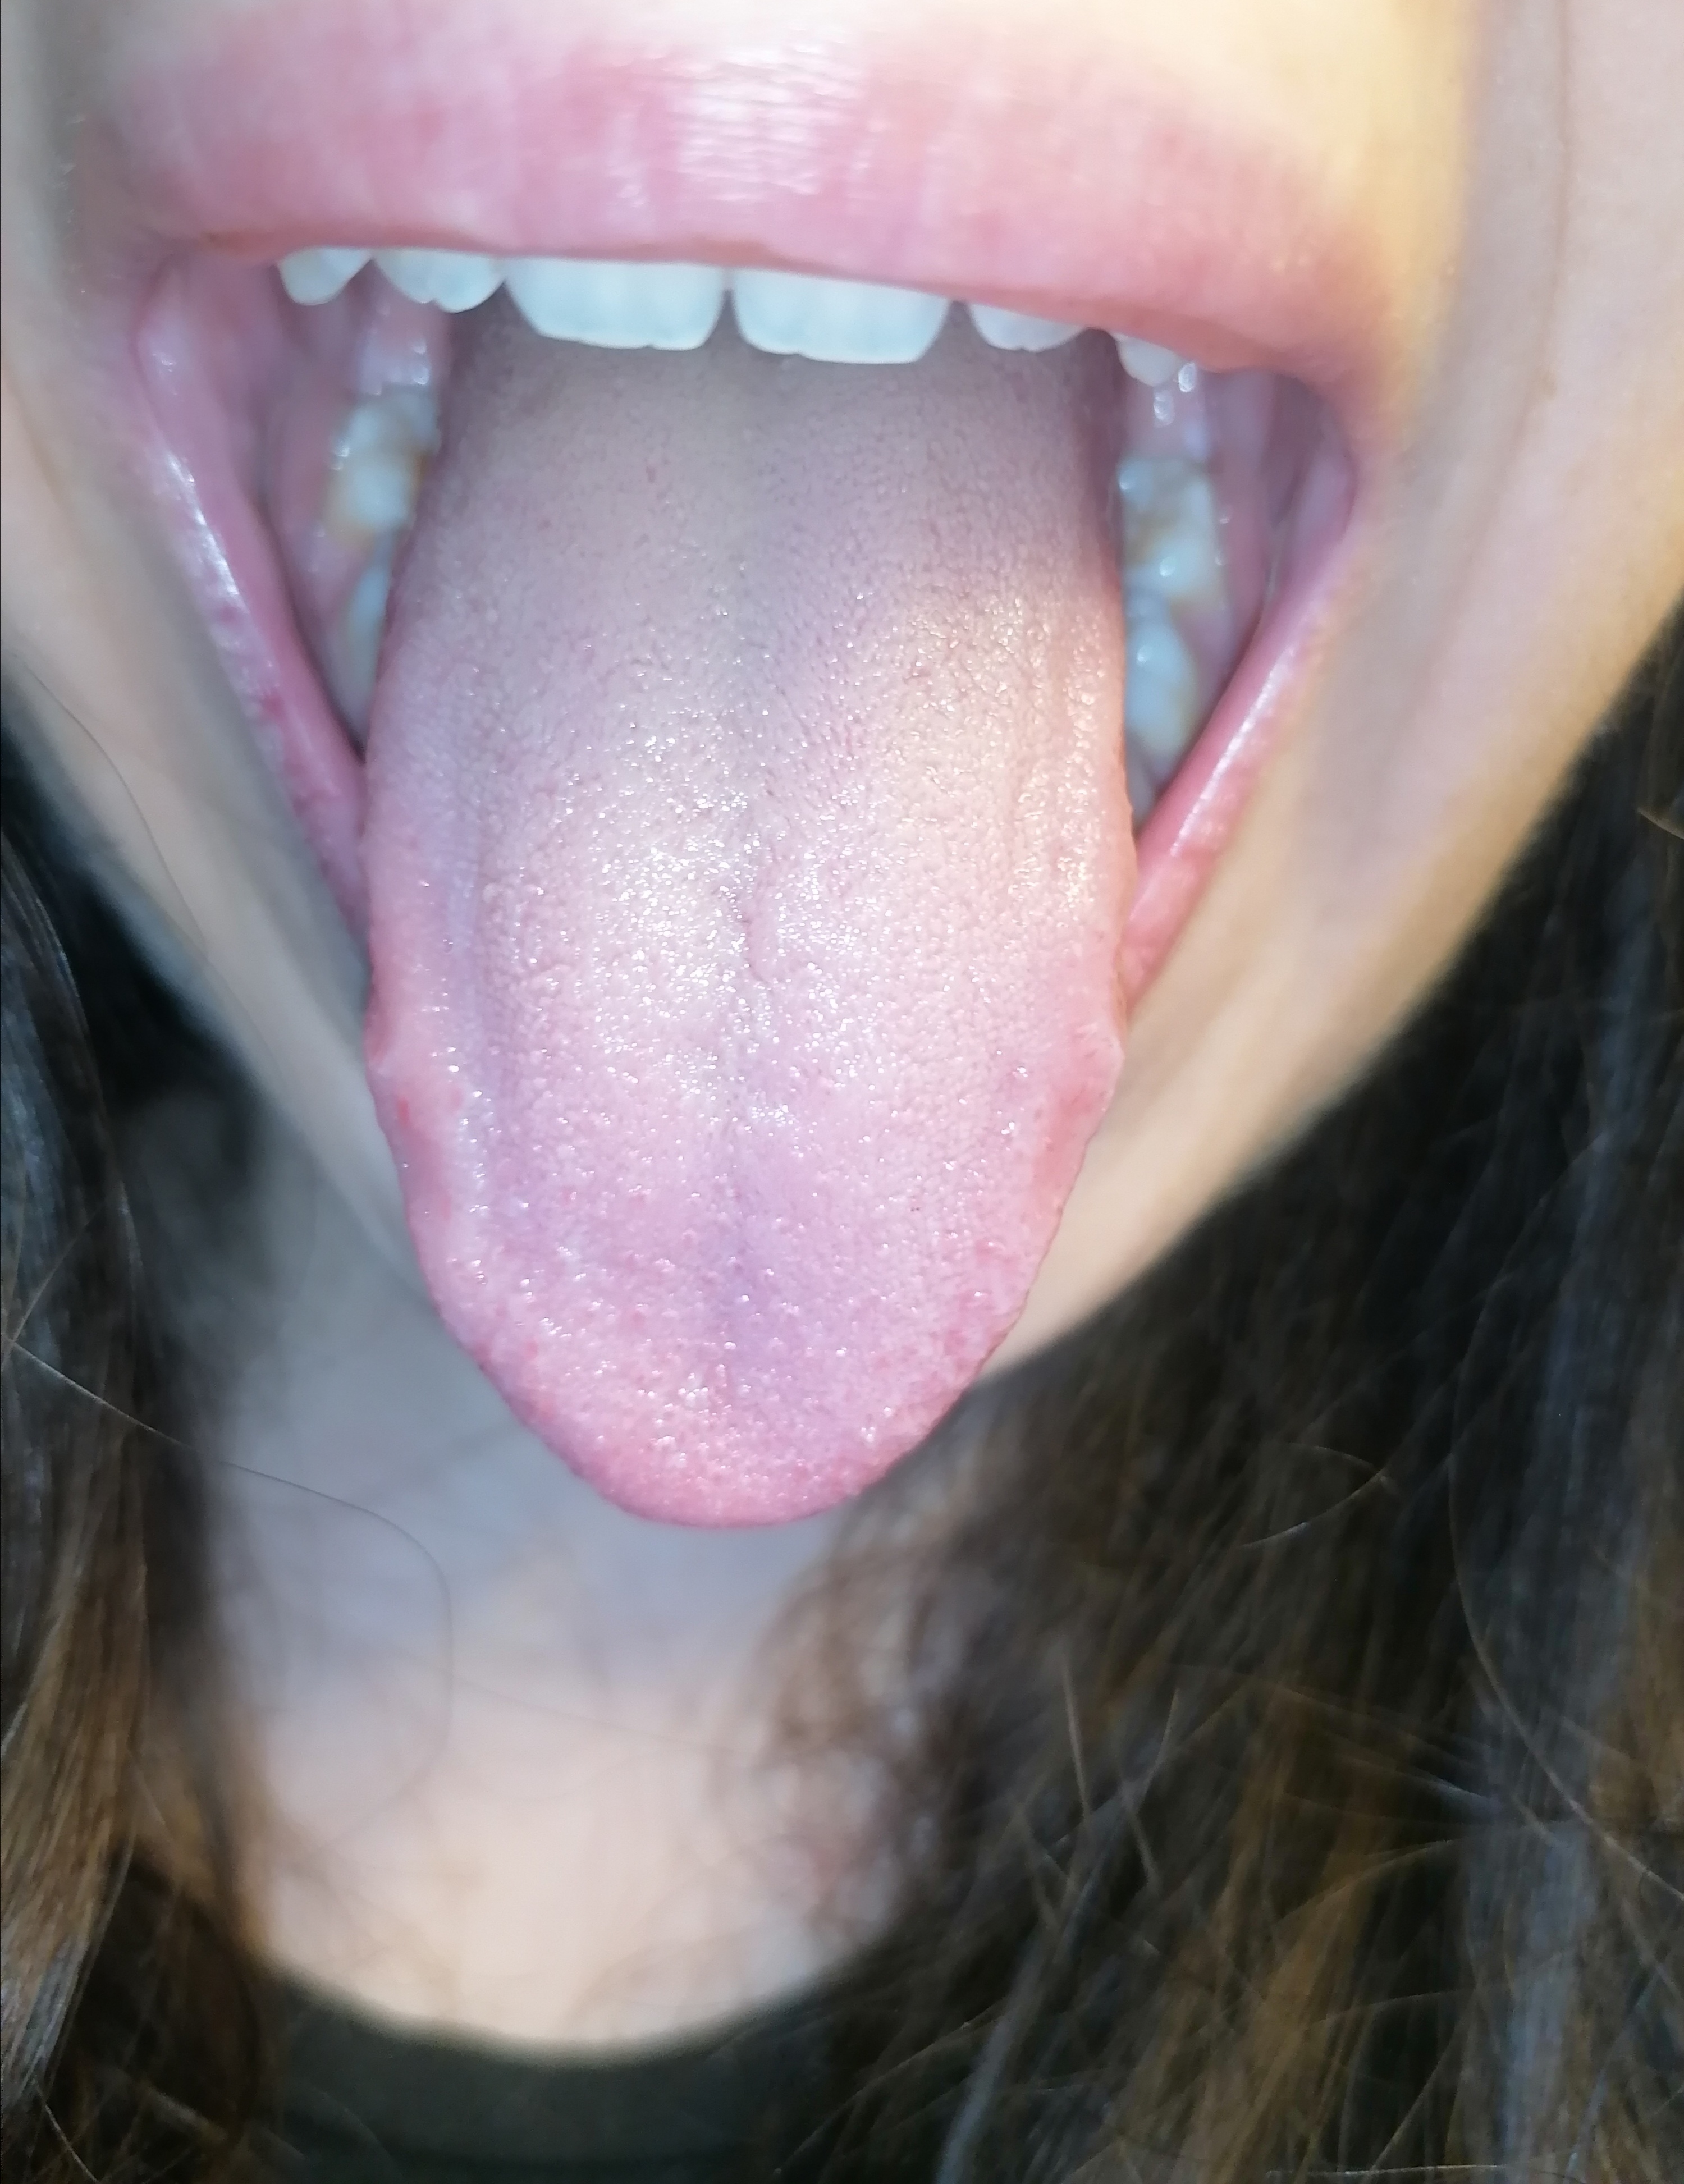 Escrescenze rosse sulla lingua